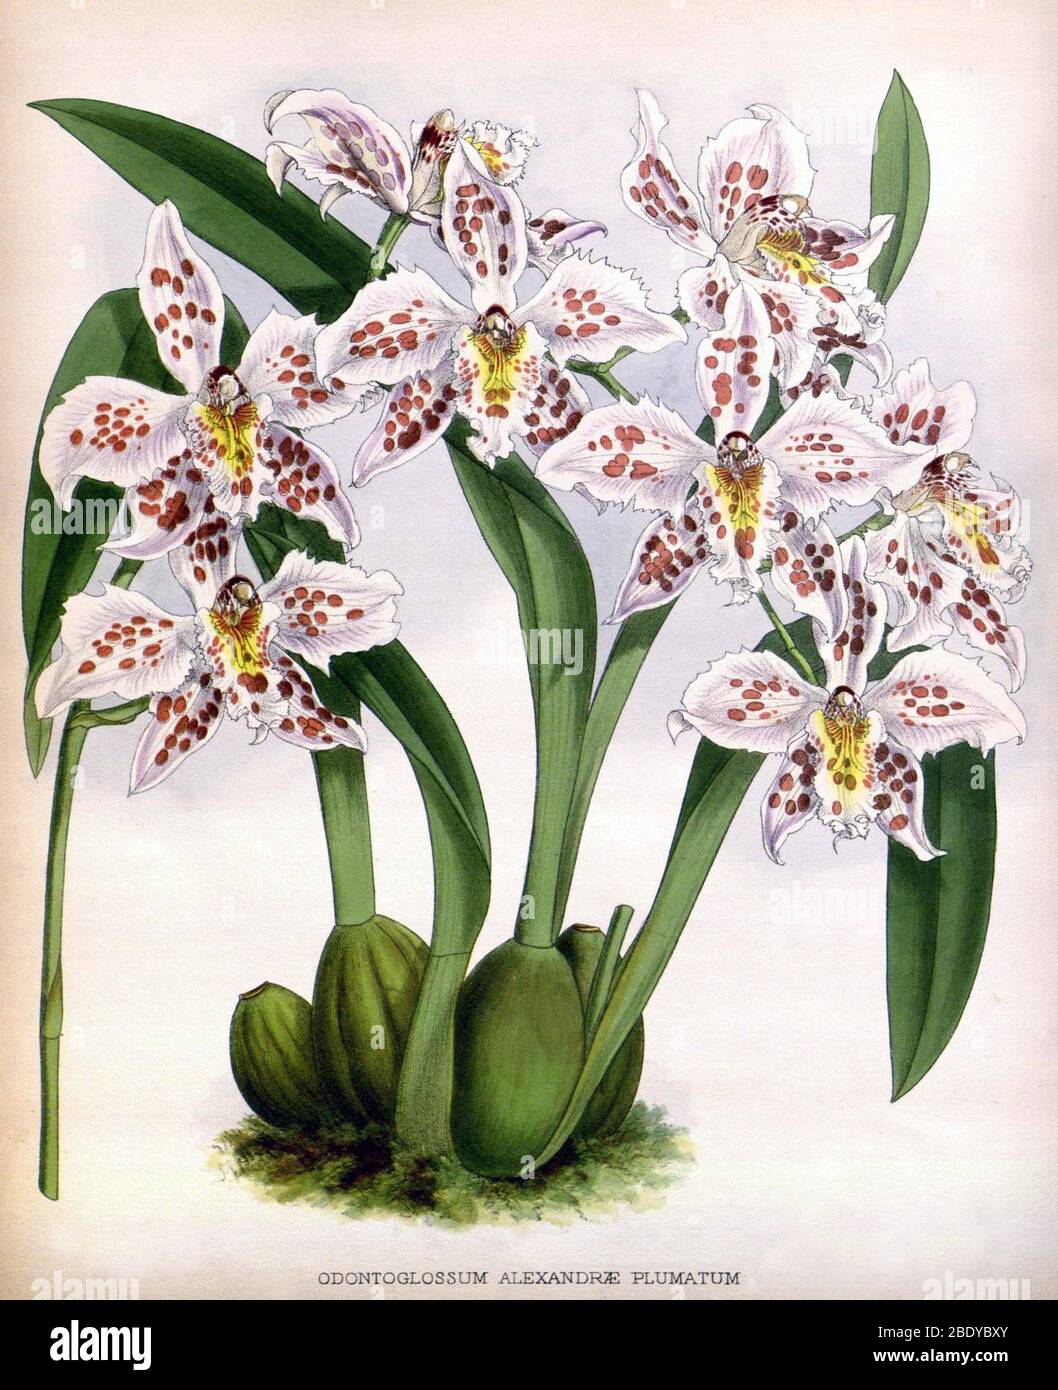 Orchid, O. alexandrae plumatum, 1891 Stock Photo